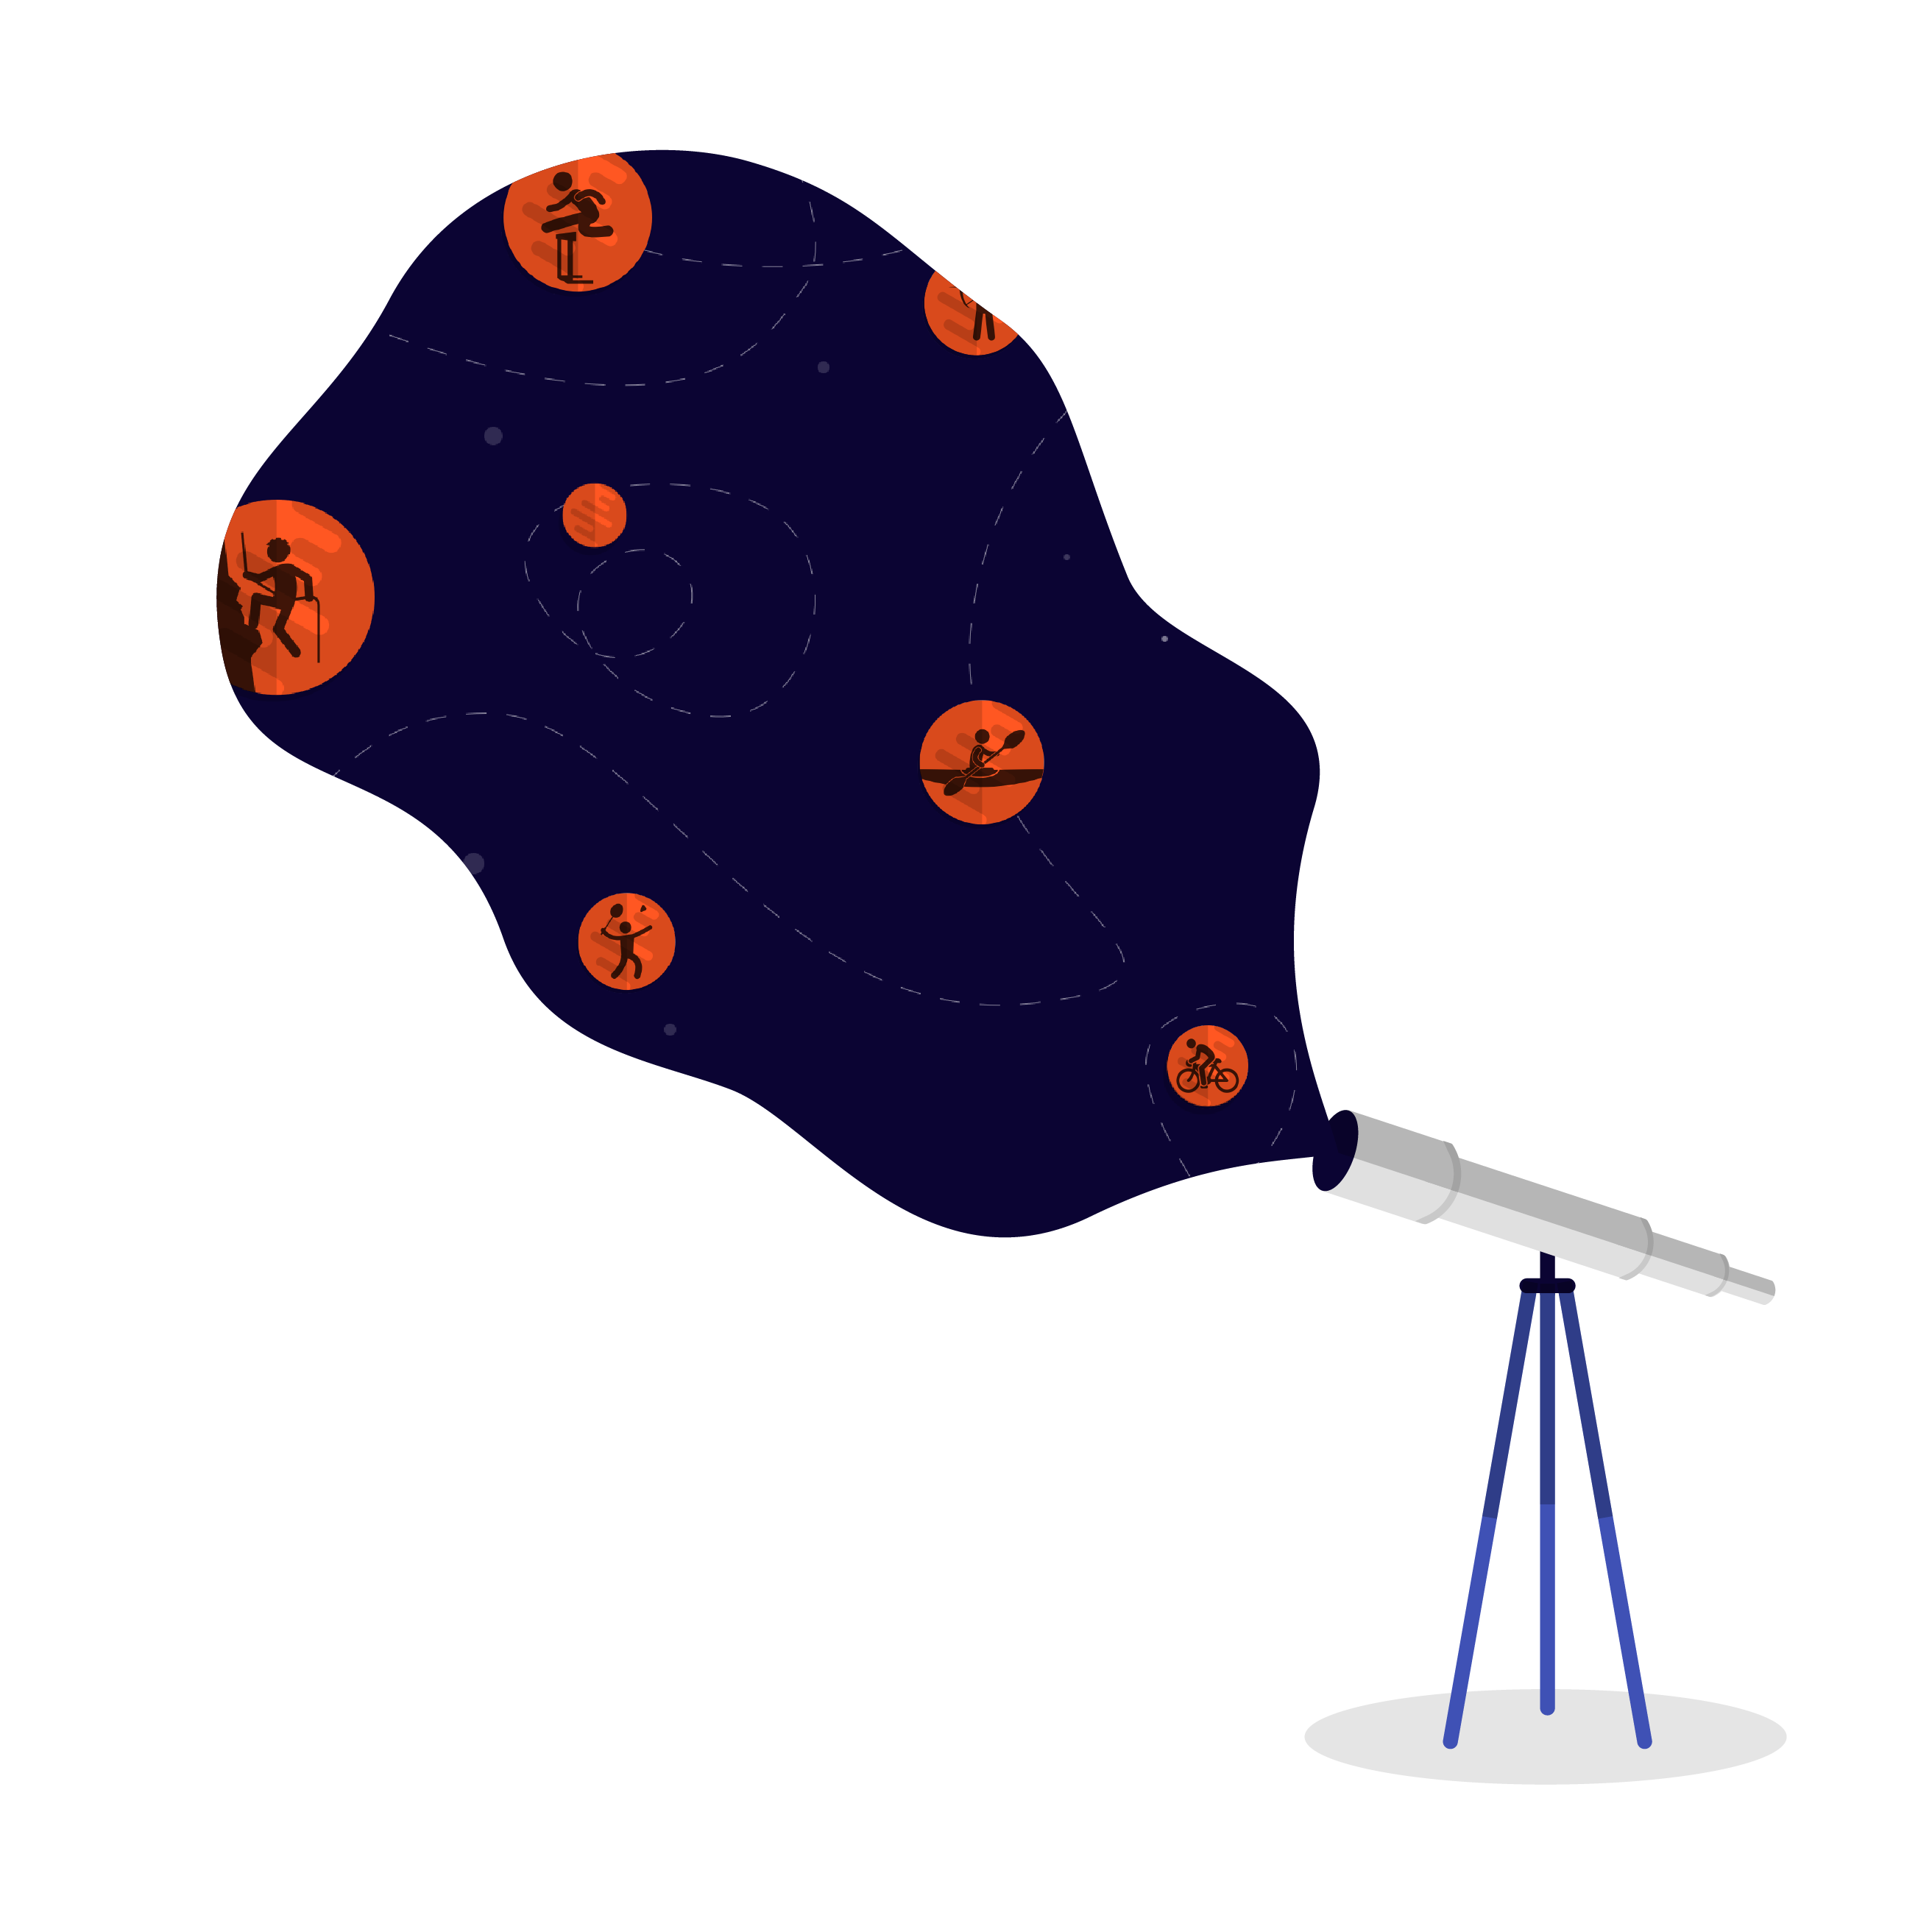 Sporti's telescope